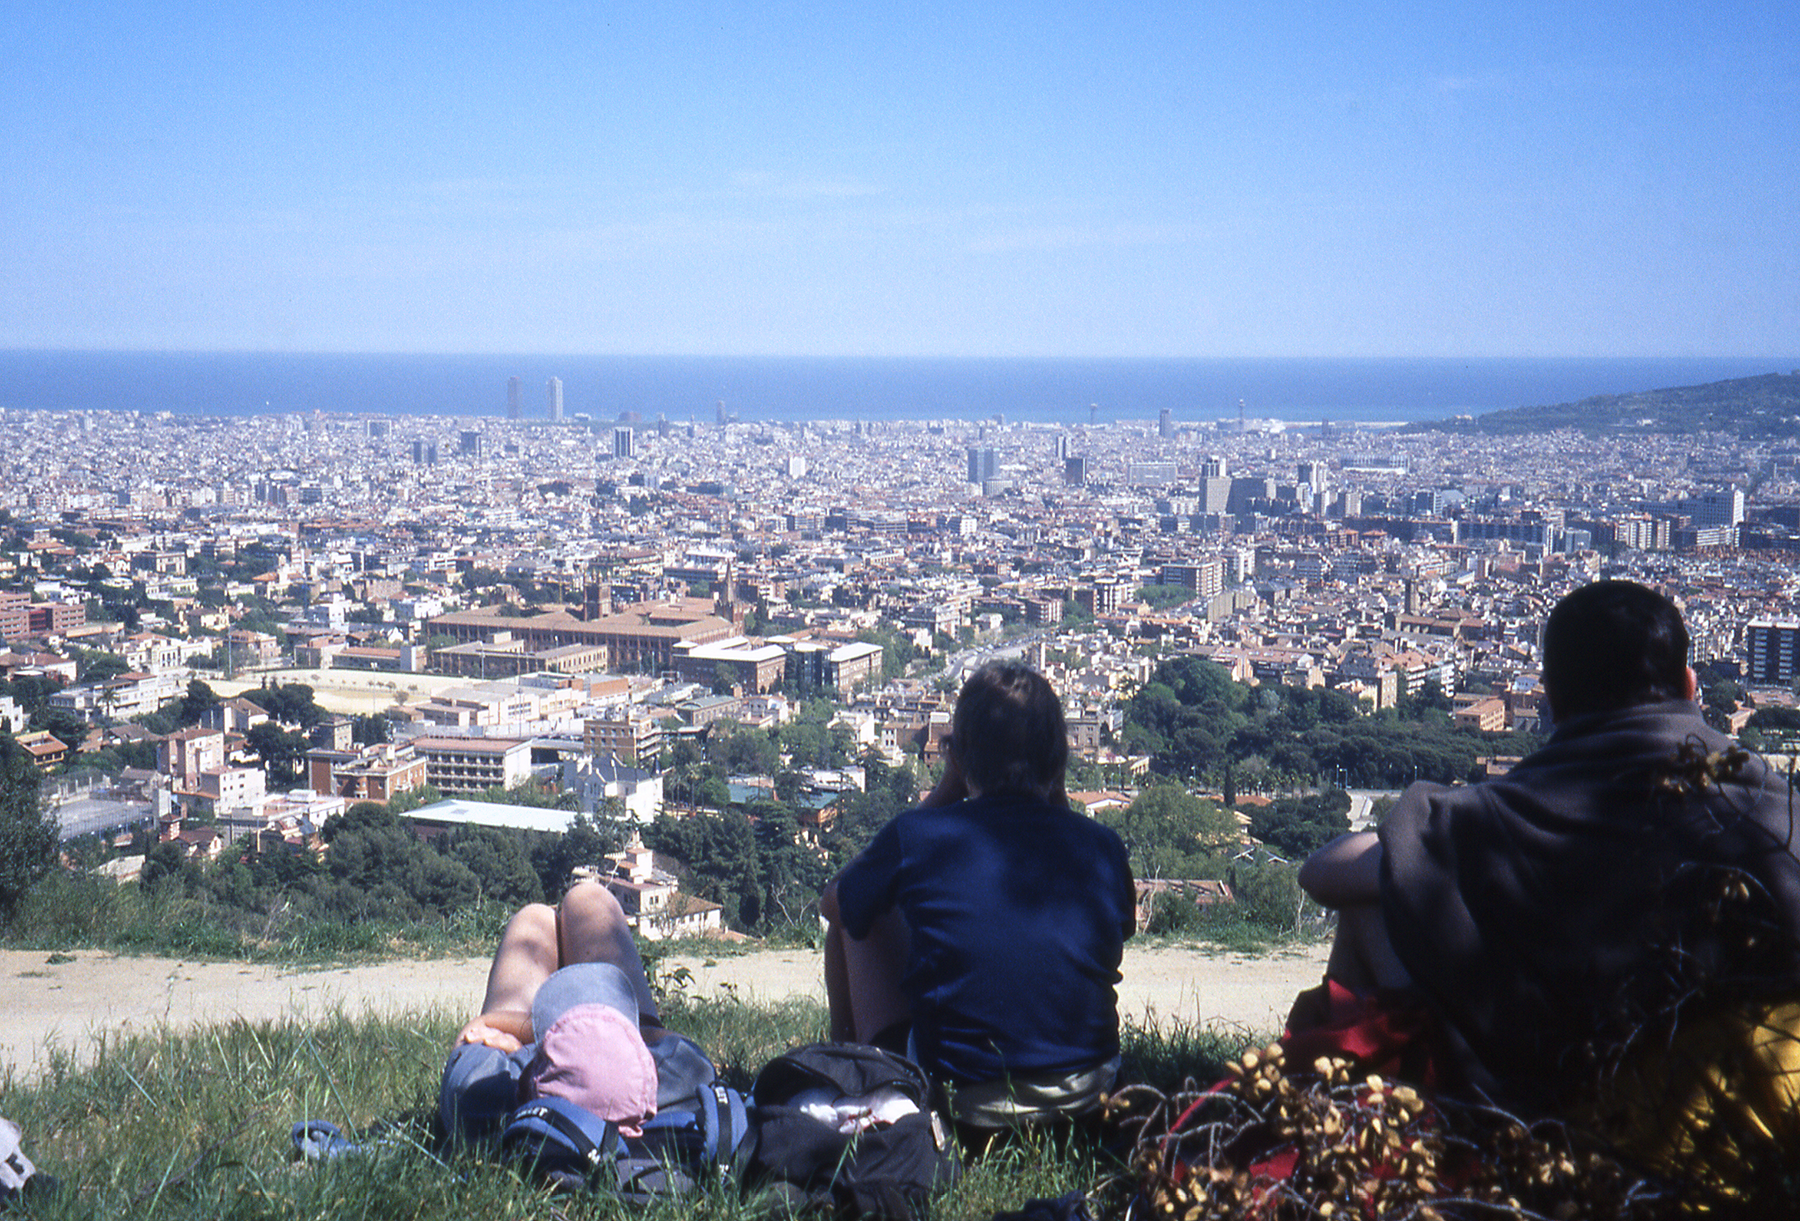 Vue du Cami de les Aigues de Collserola sur Barcelone